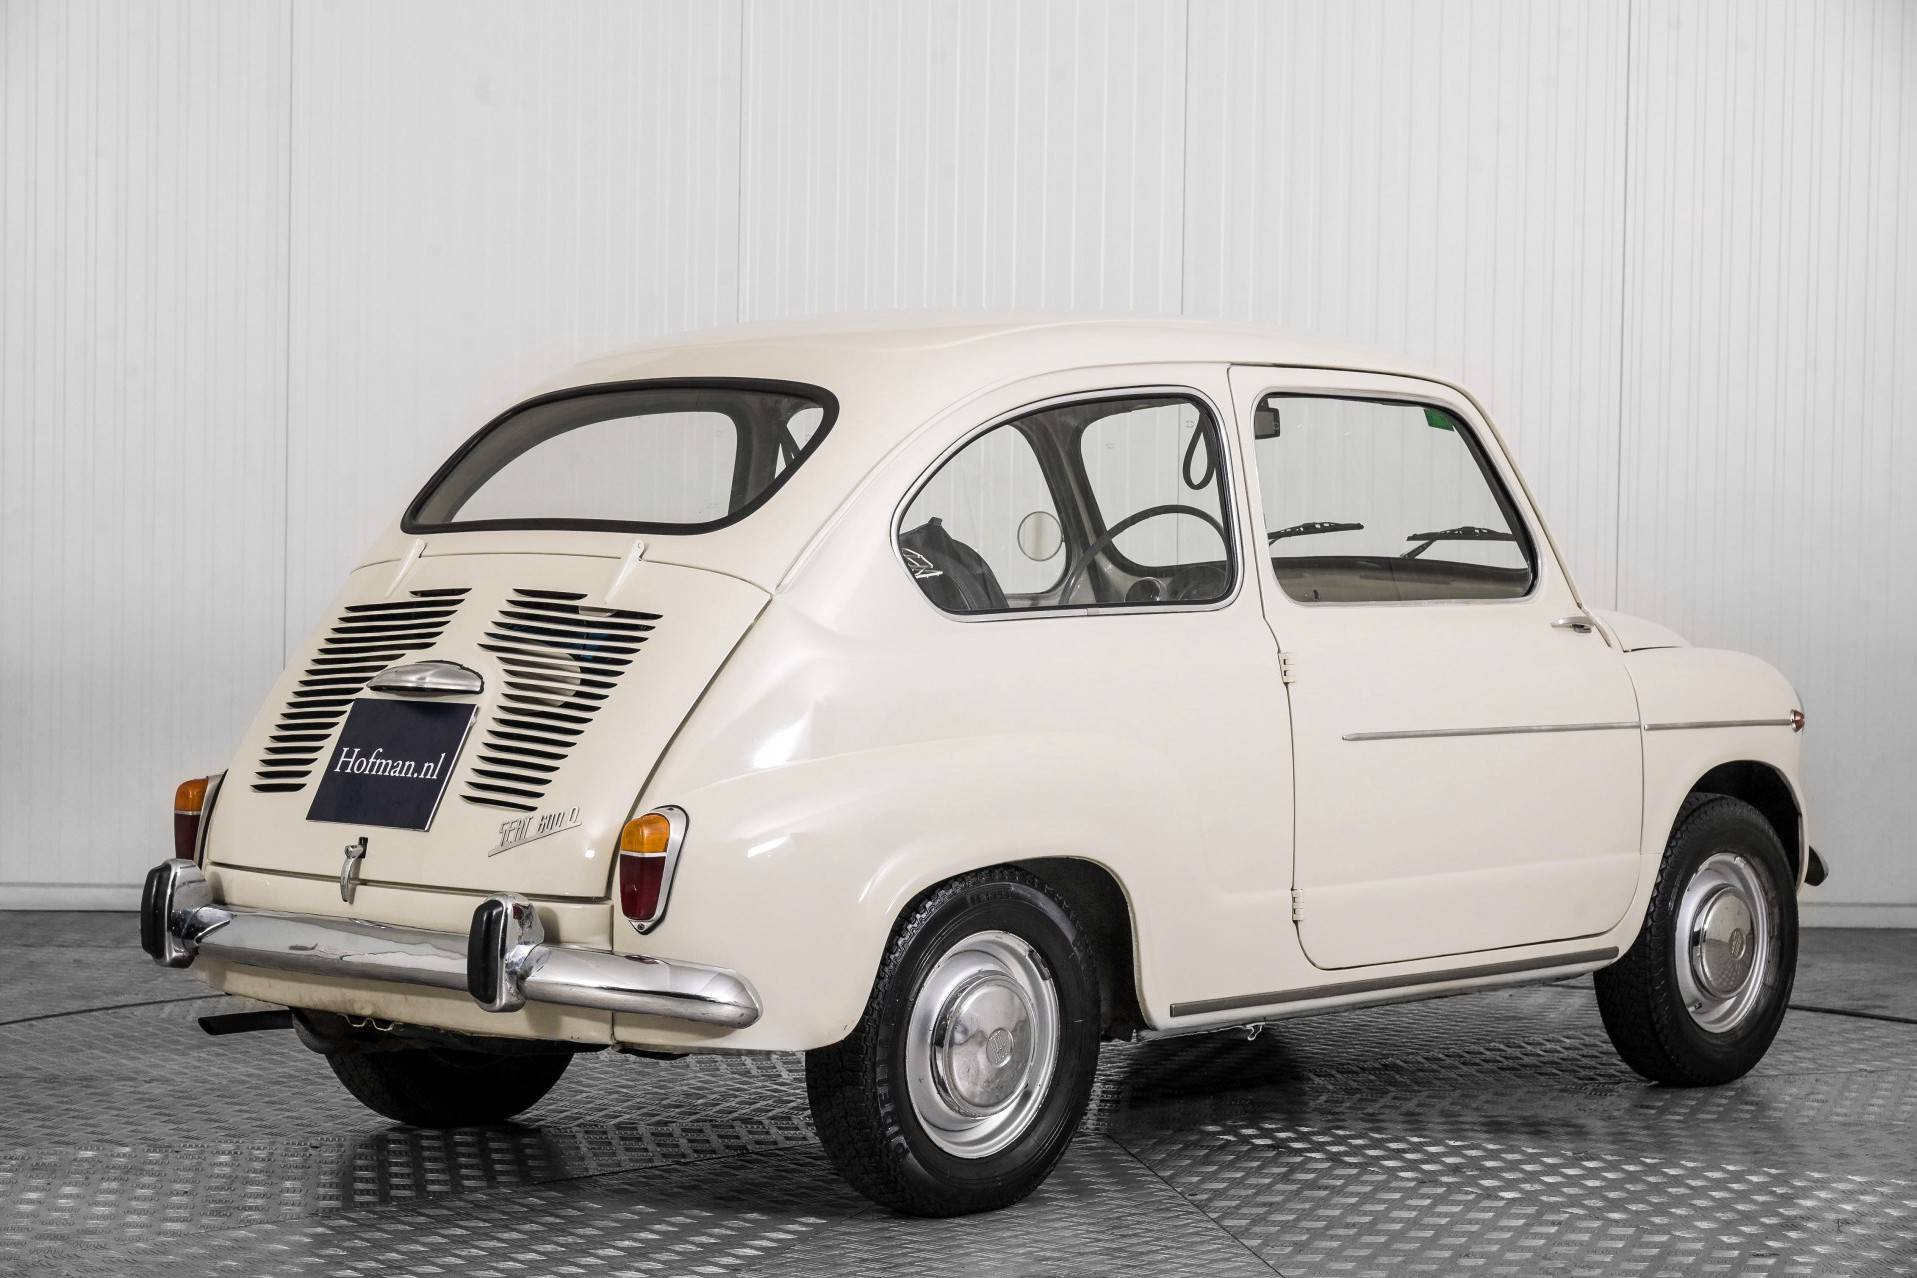 FIAT 600 D (1968) in vendita a 7.900 €